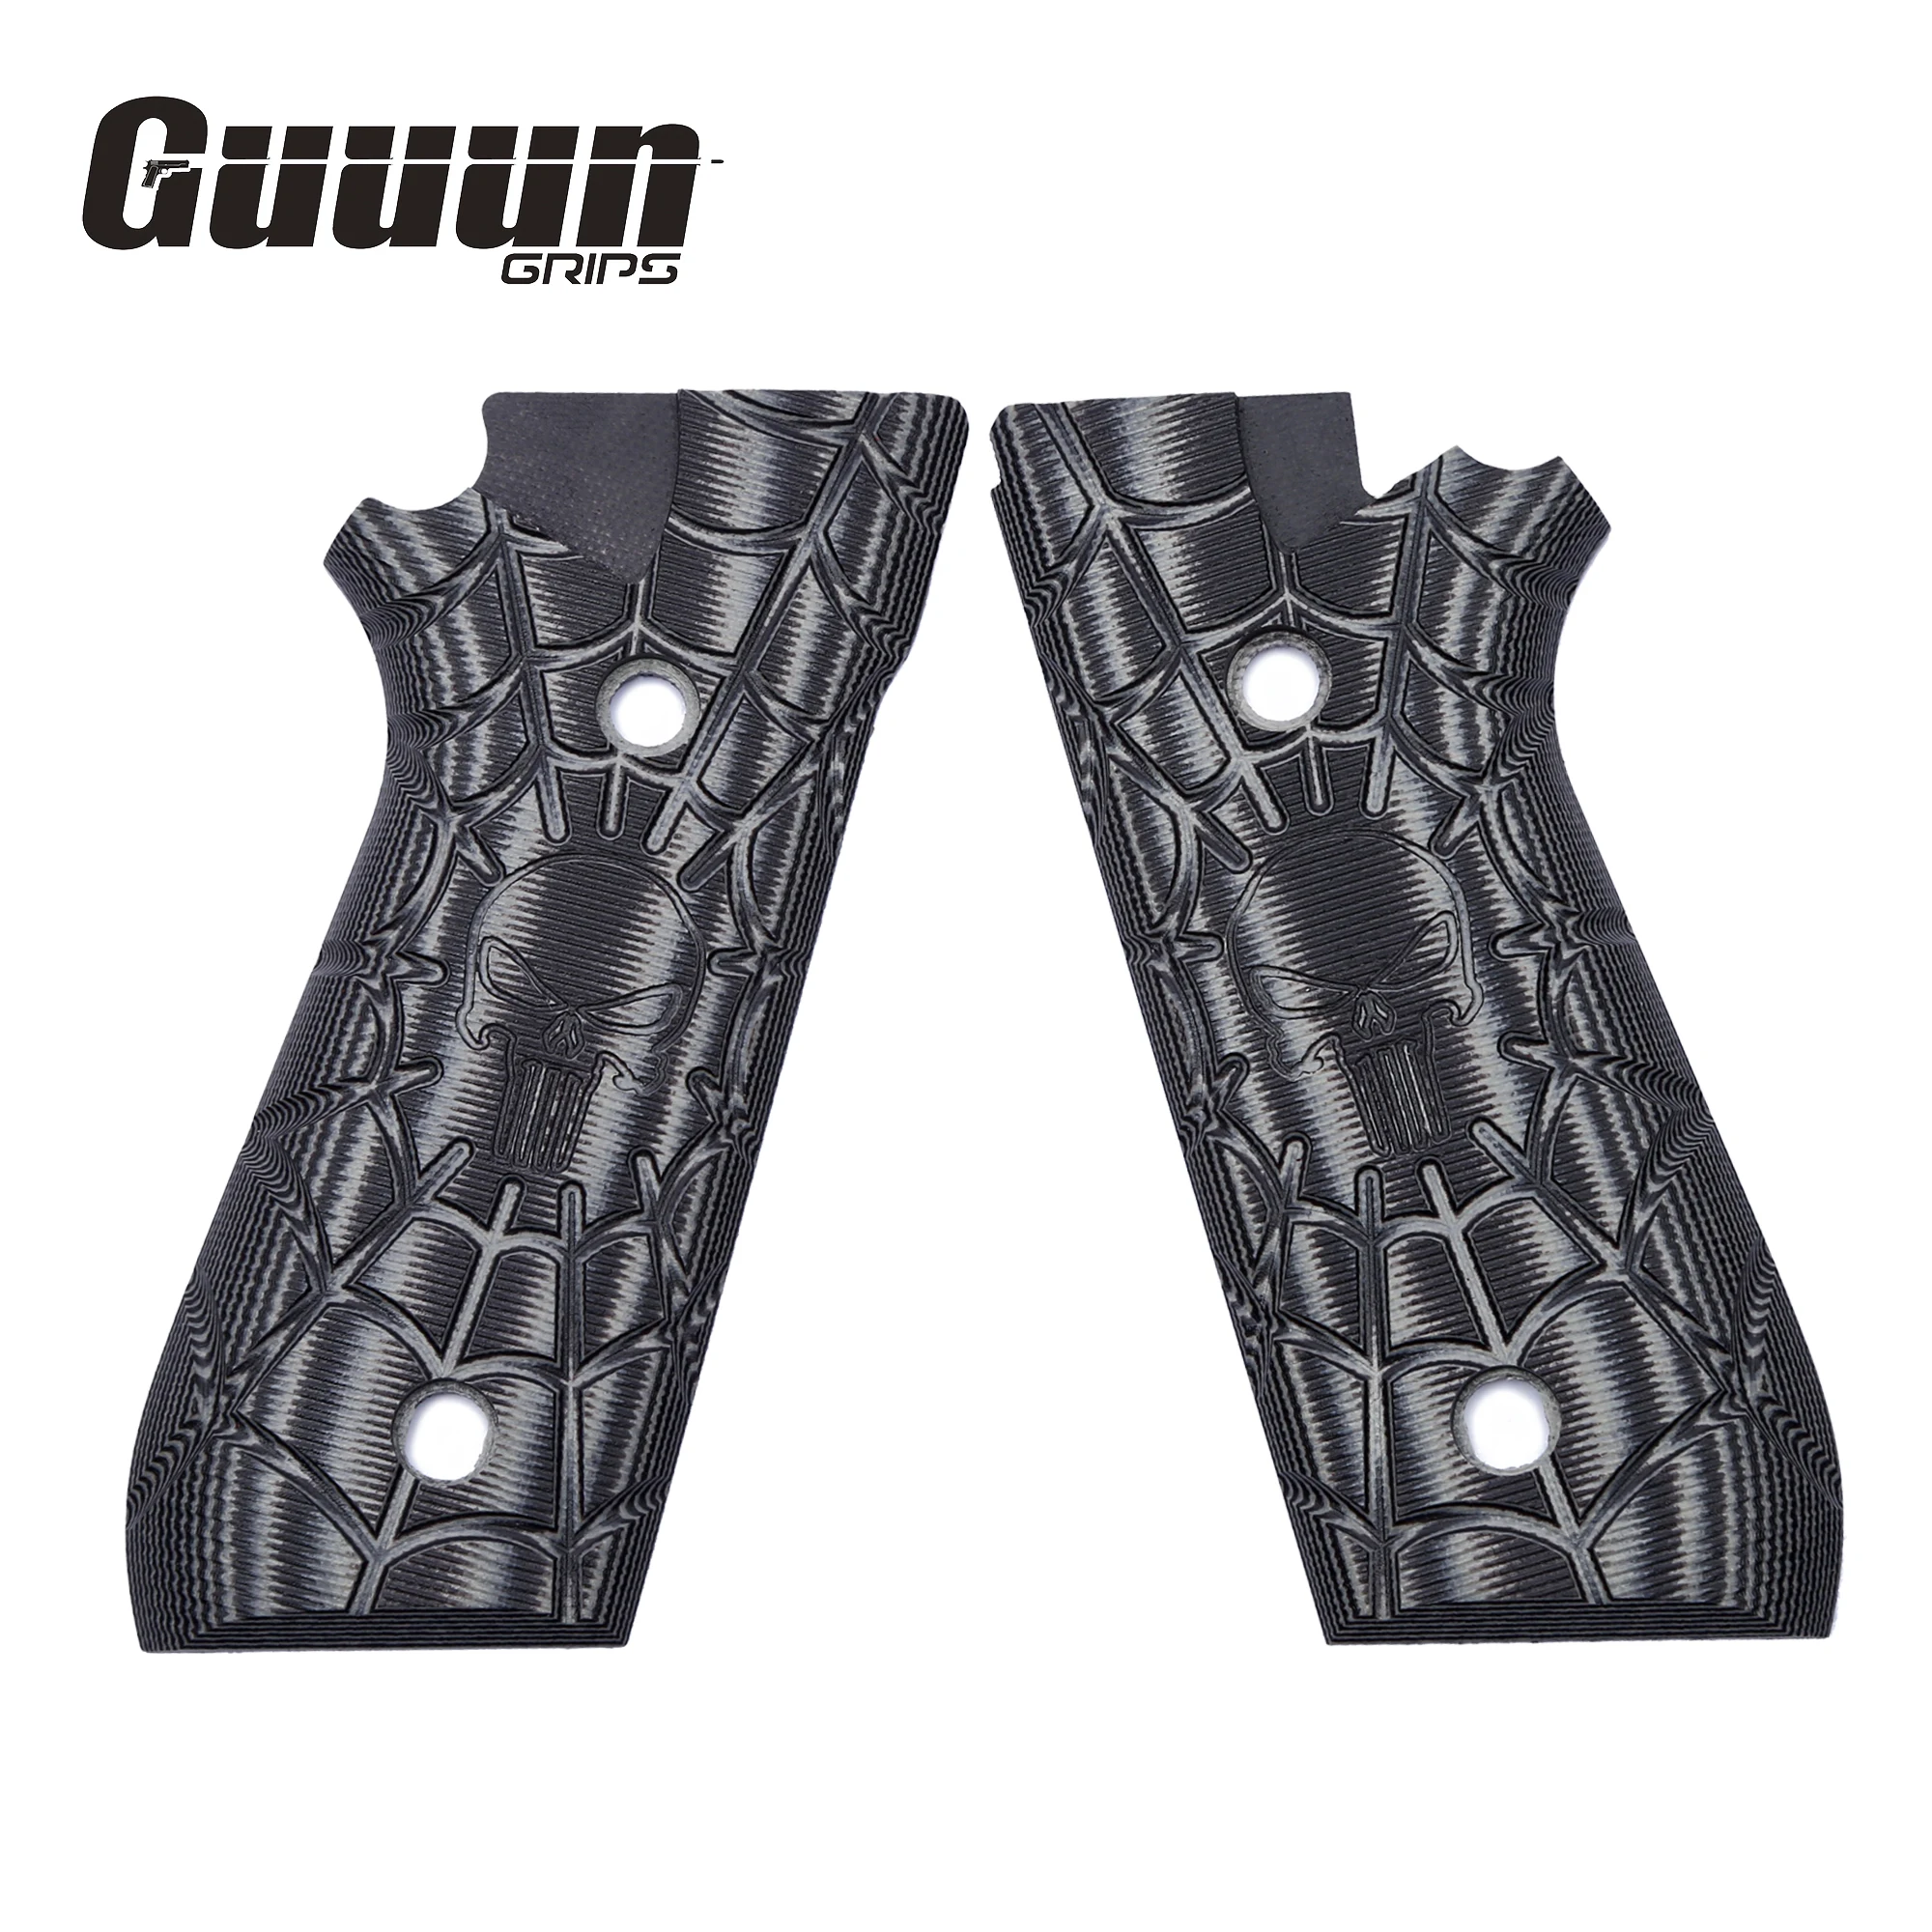 Guuun G10 Griffe für Taurus PT92 Schädel Skeleton Punisher Textur Kompatibel mit PT 92 /99/100/101 und Decocker - 5 Farbe optionen